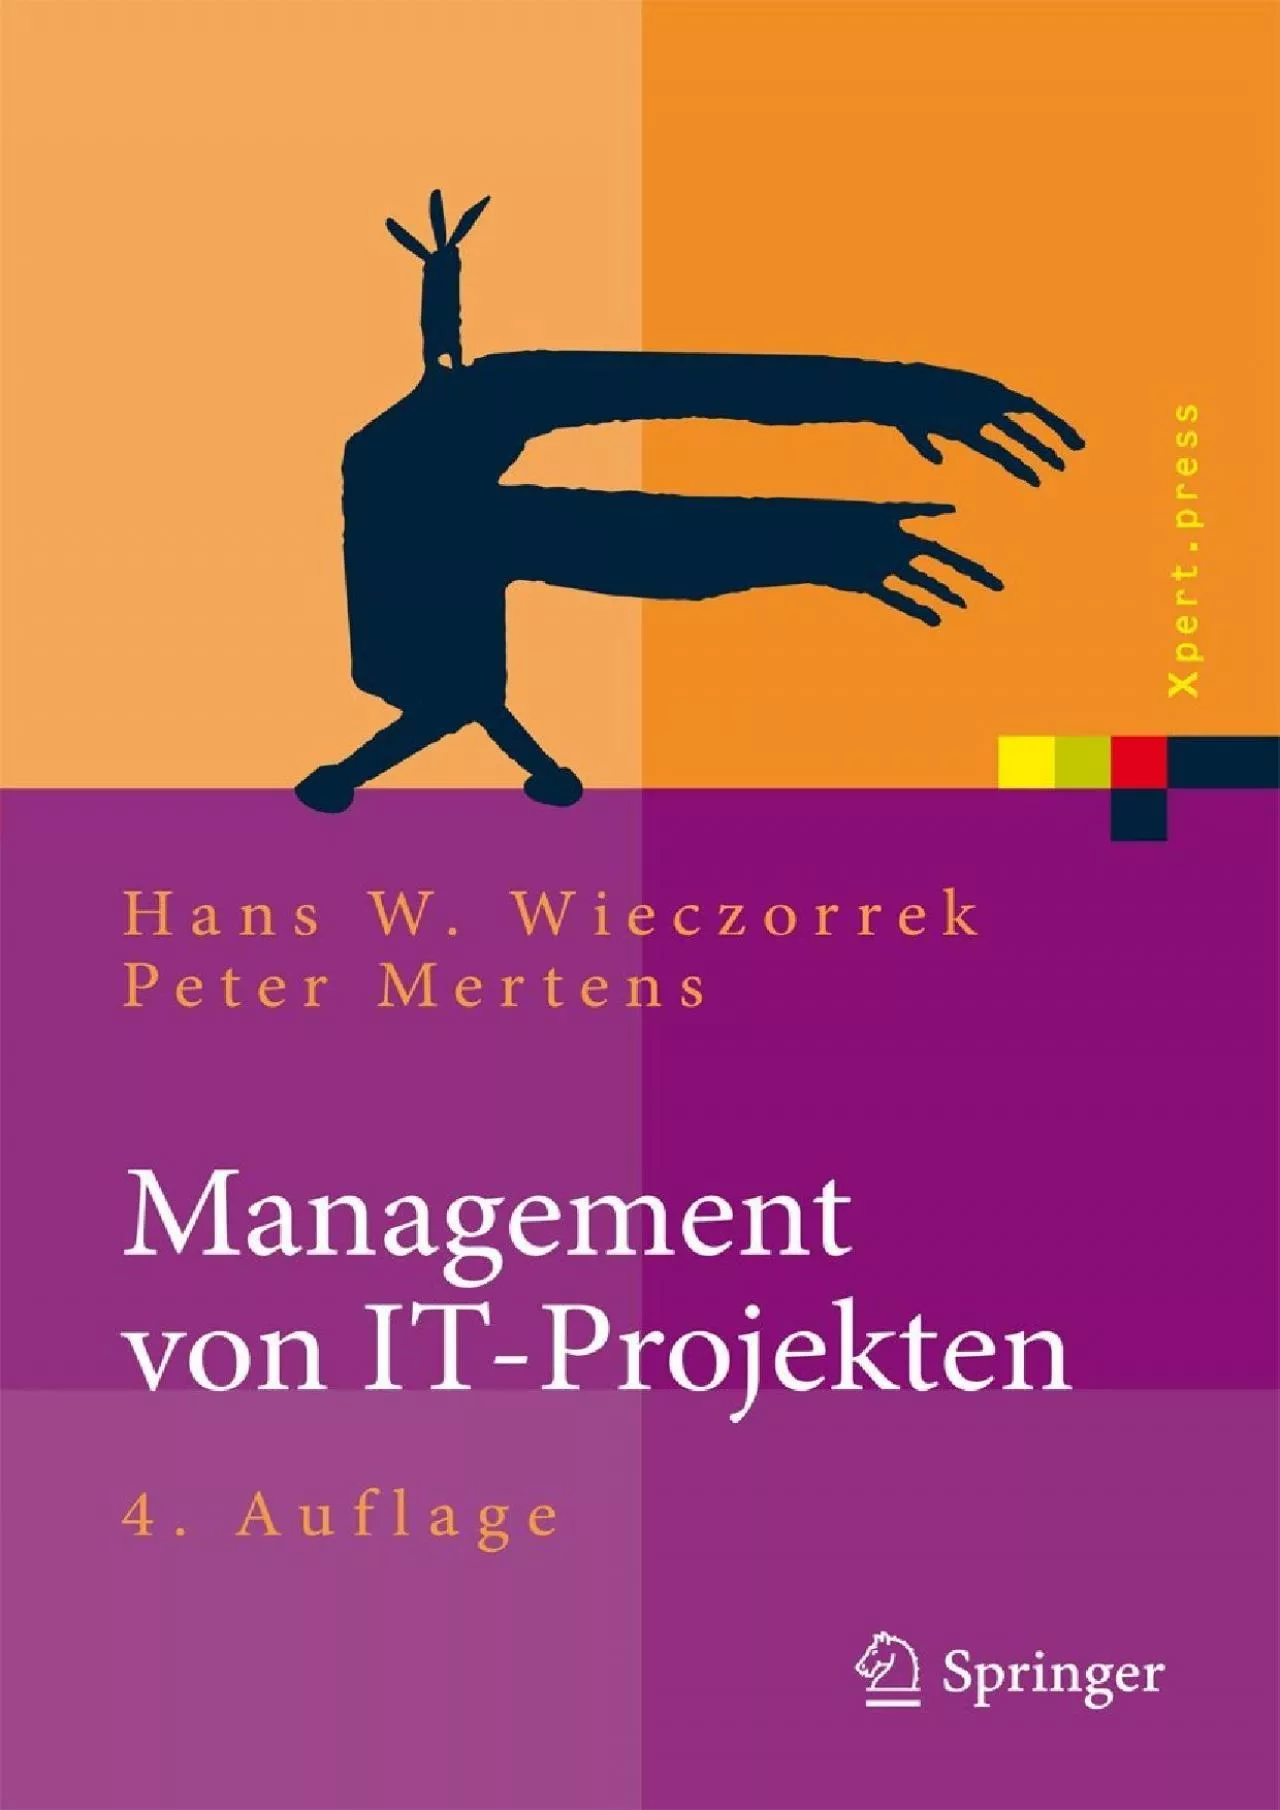 [PDF]-Management von IT-Projekten: Von der Planung zur Realisierung (Xpert.press) (German